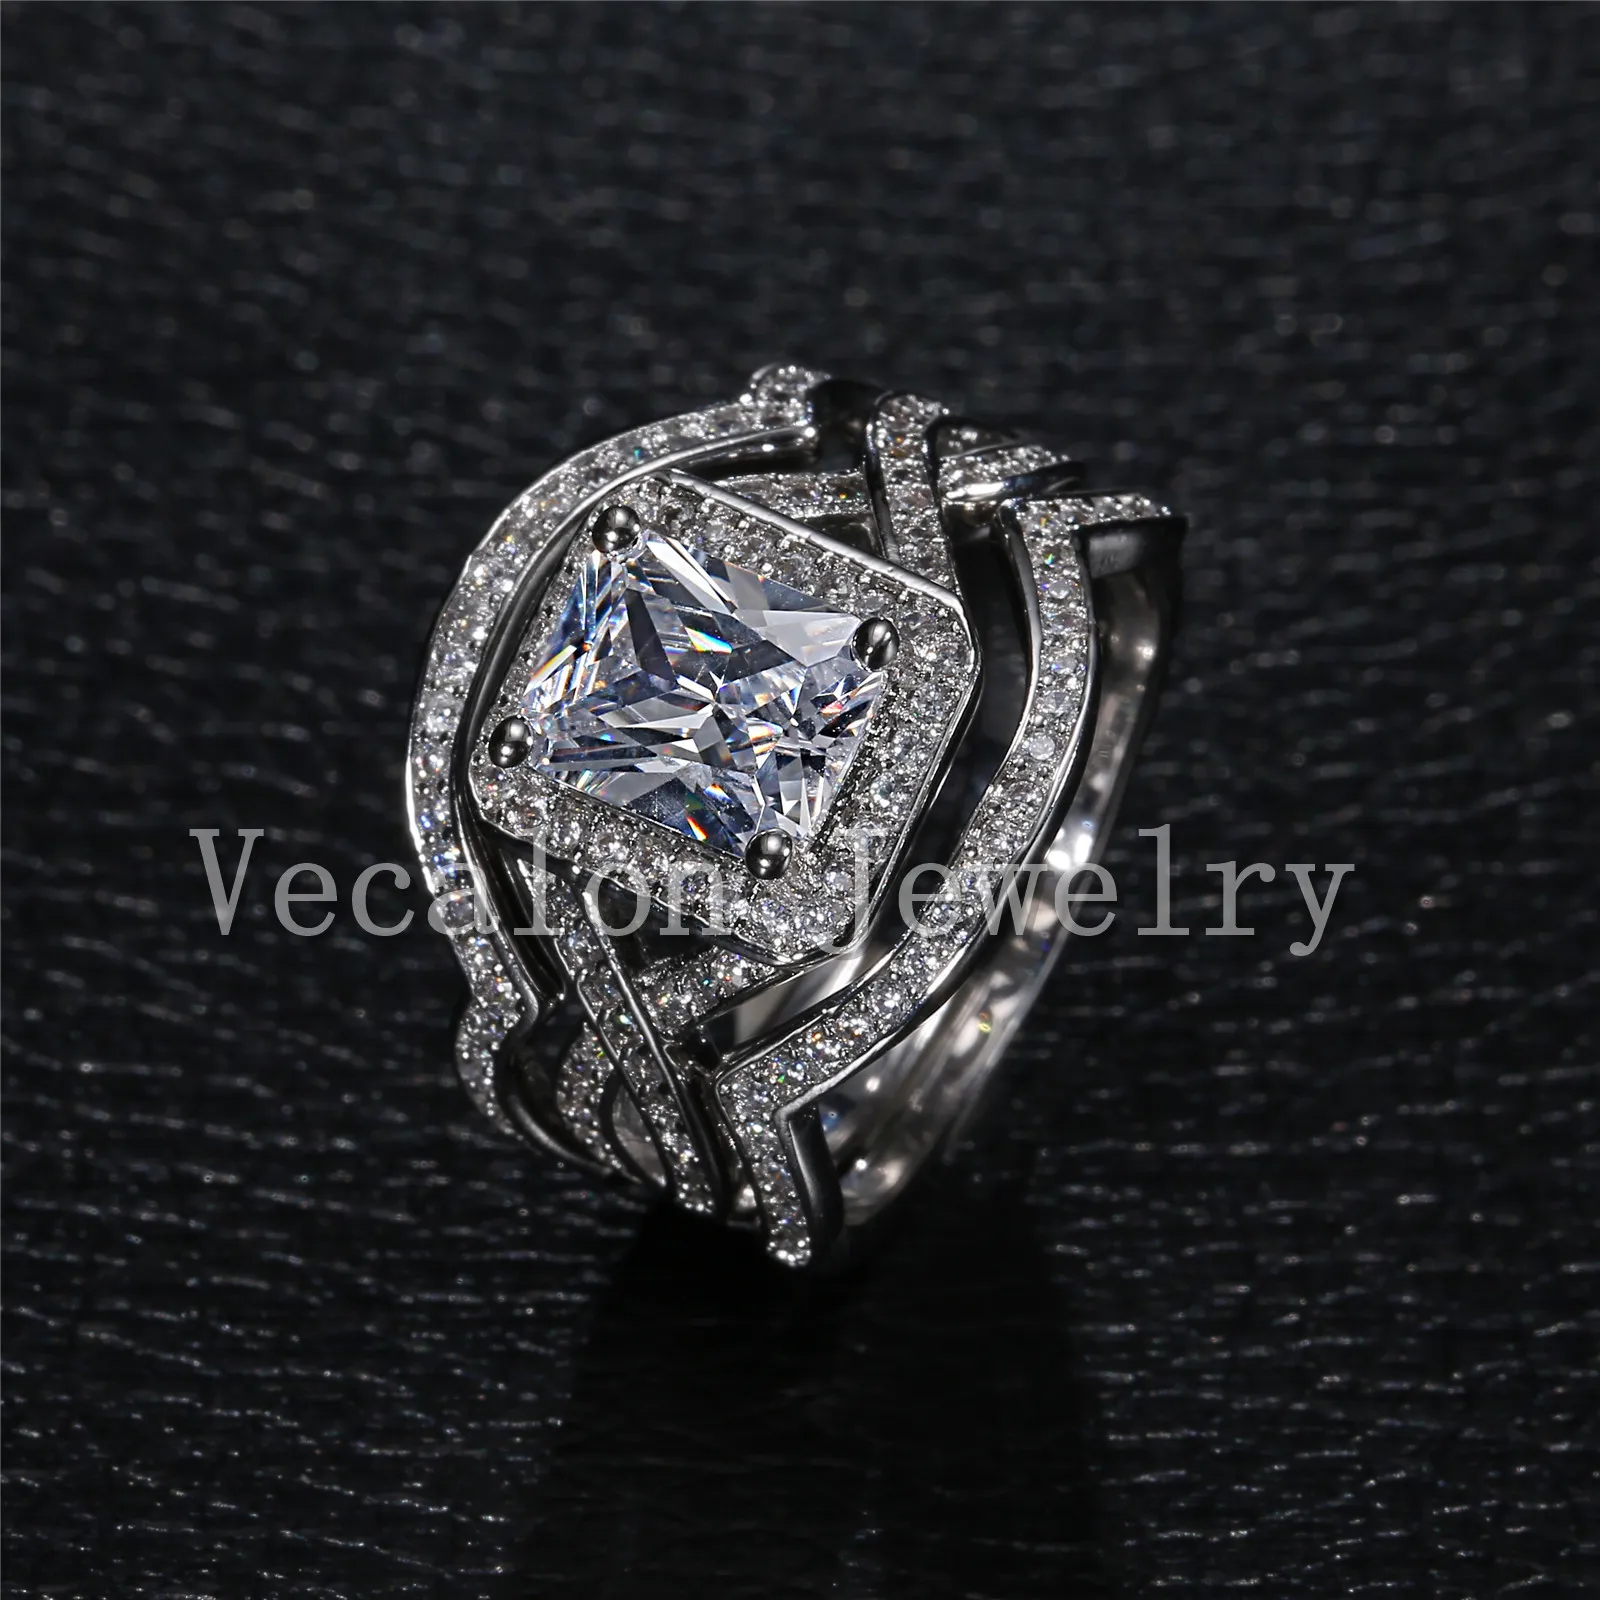 Vecalon princesa corte 4ct diamante simulado cz 3 en 1 anillo de compromiso conjunto de anillo de boda para mujer 10KT anillo relleno de oro blanco